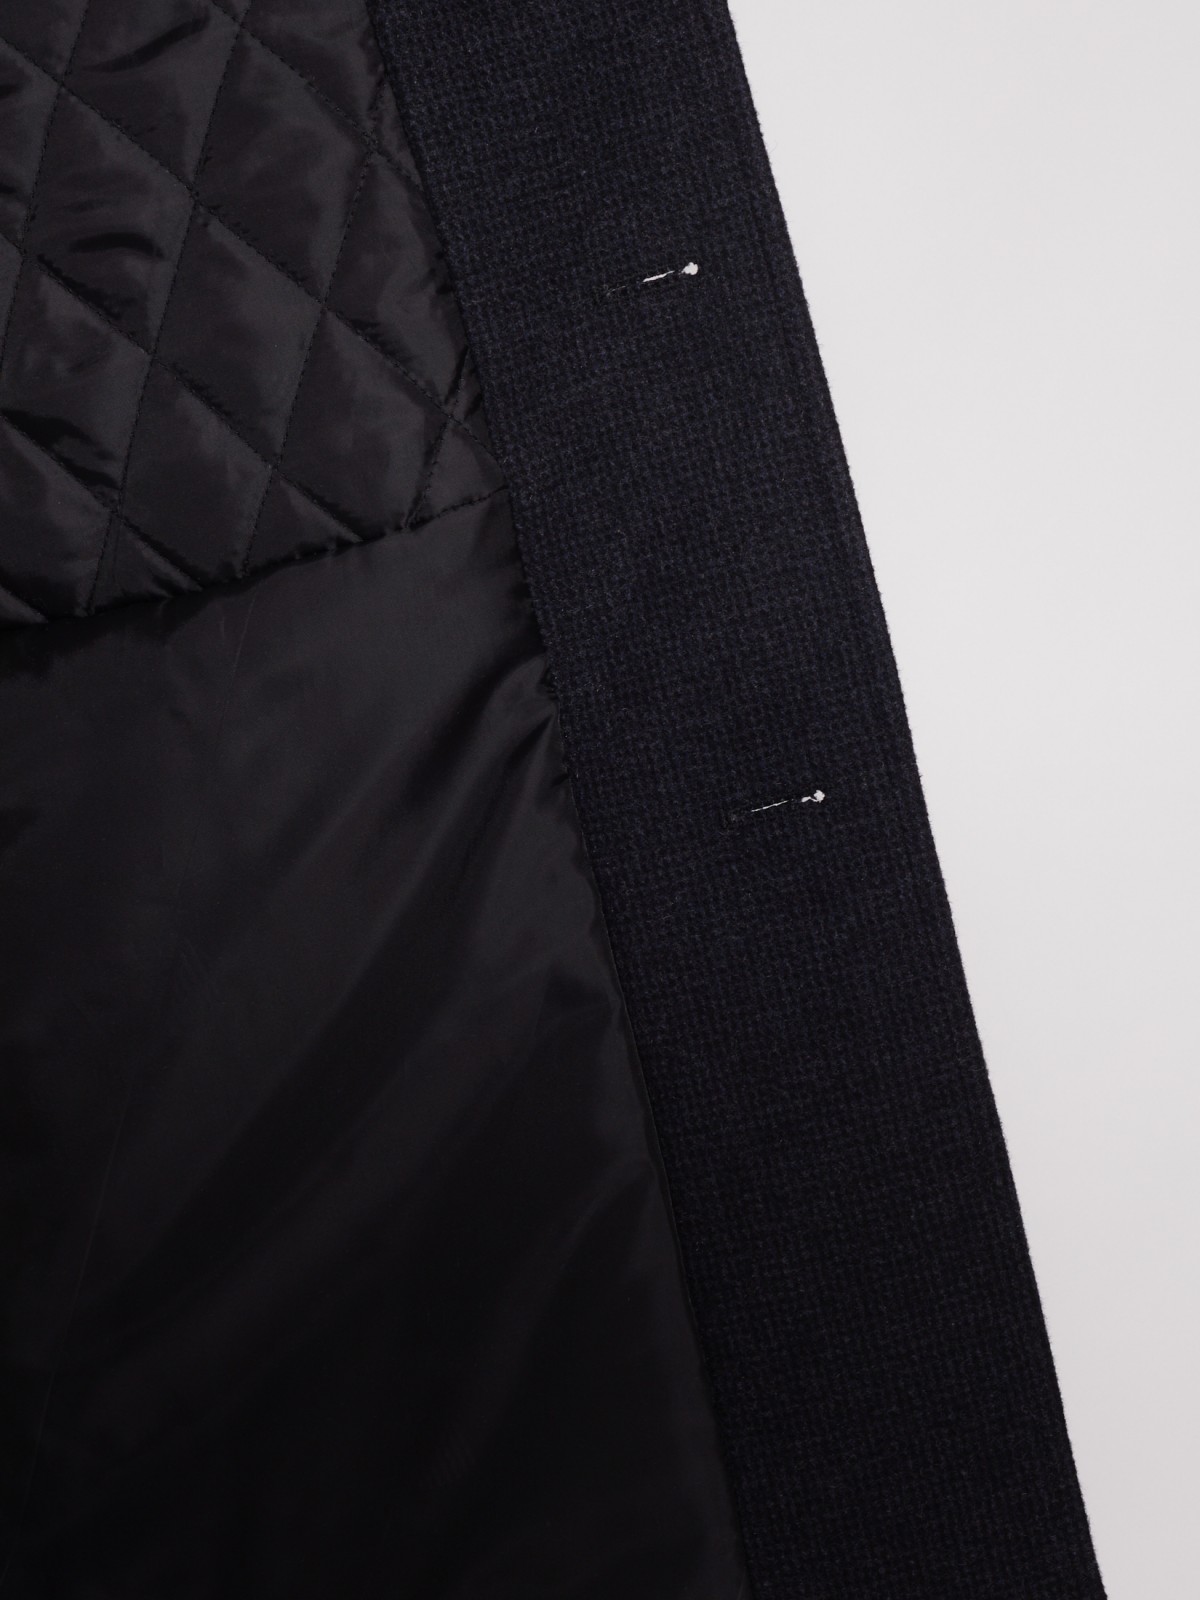 Утеплённое однобортное пальто zolla 012135839014, цвет темно-синий, размер S - фото 3